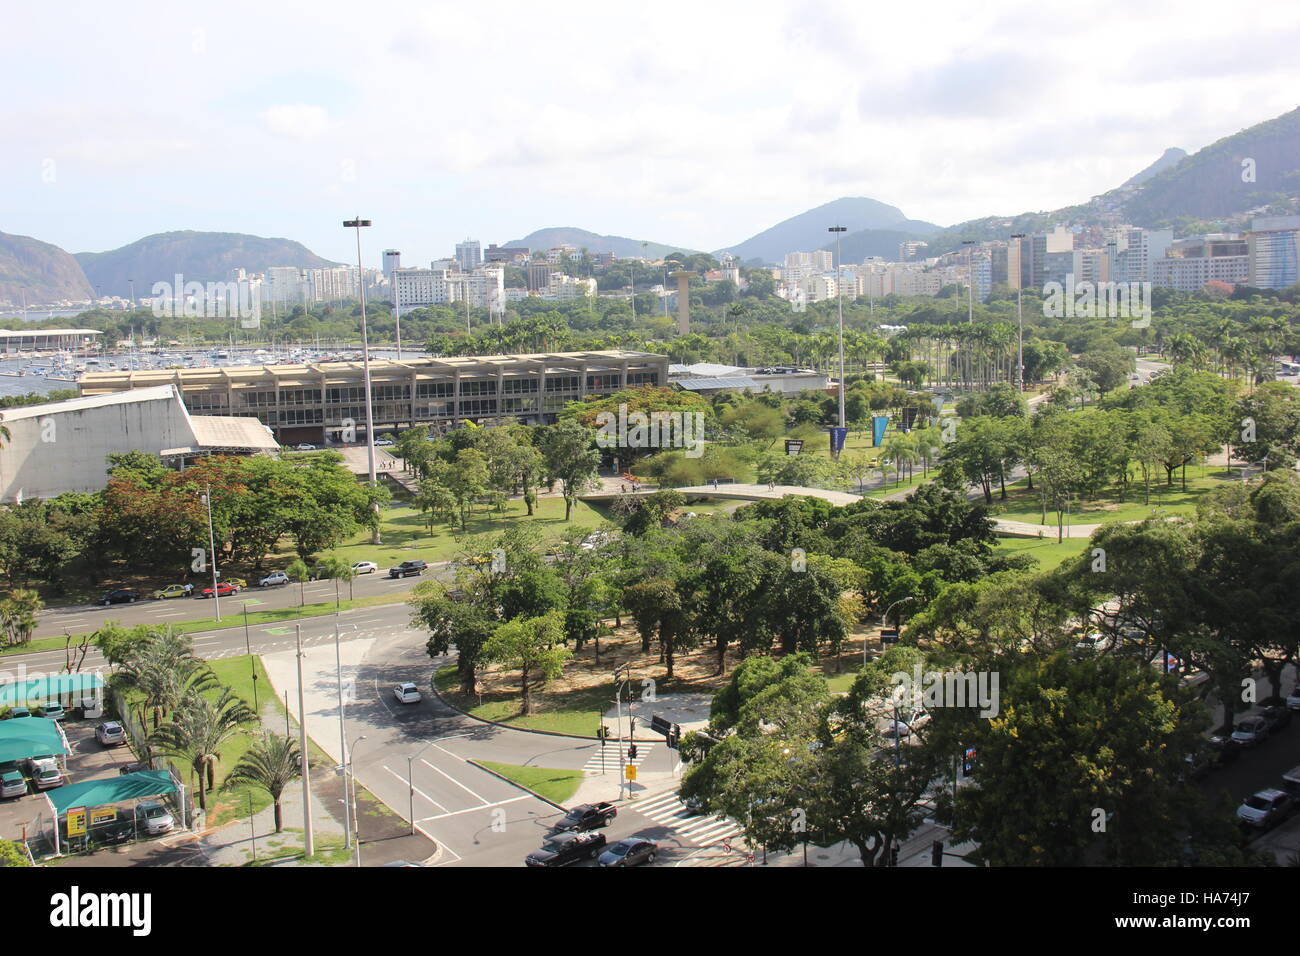 Rio de Janeiro, Brasile, 25 Novembre 2016: Aterro do Flamengo, nella regione centrale di Rio de Janeiro, visto dalla parte superiore di un edificio. Nelle immagini Foto Stock